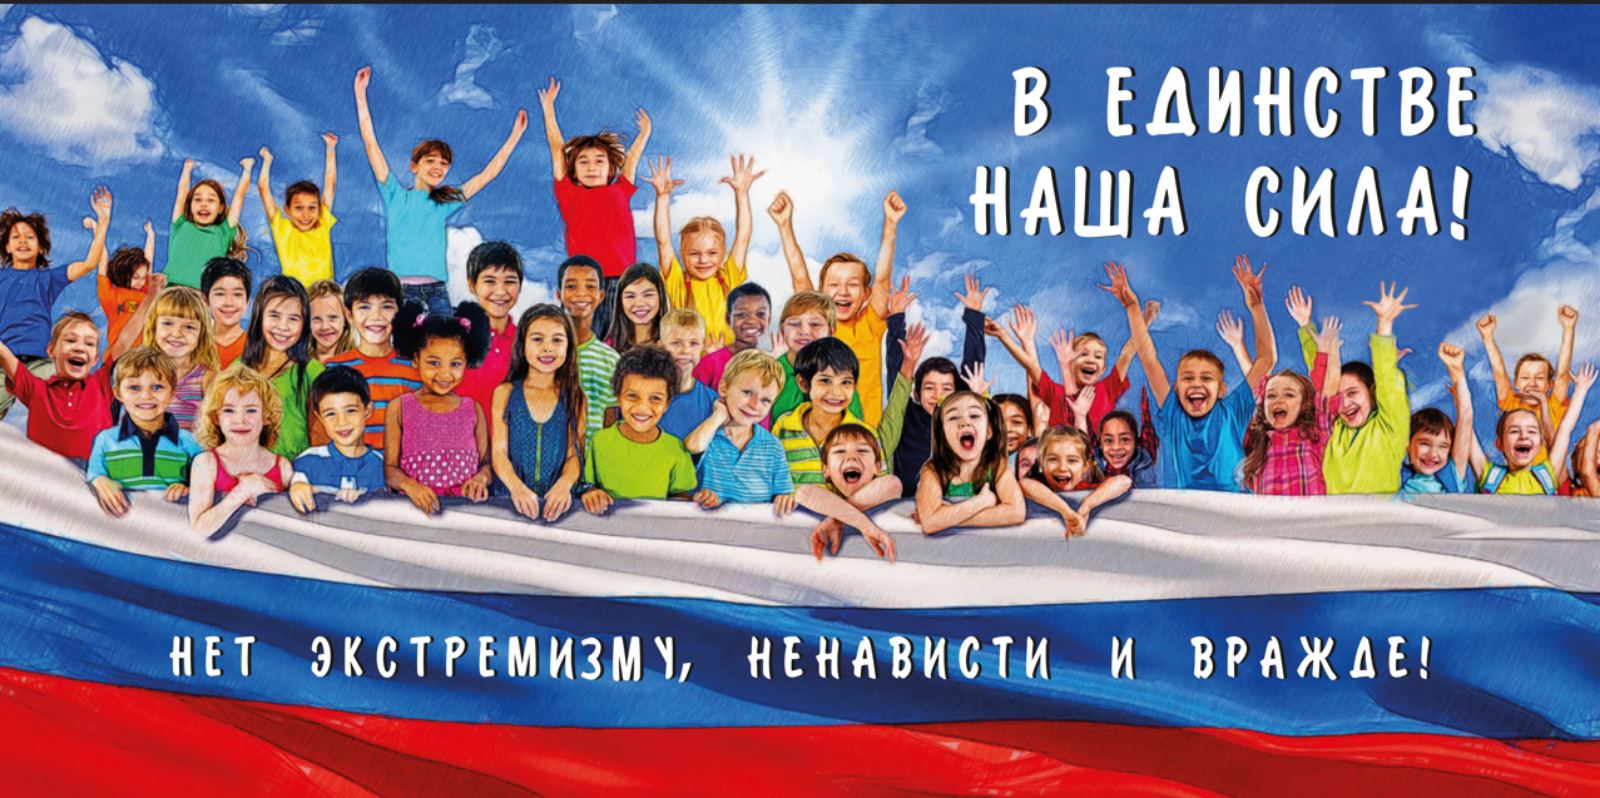 В Ульяновской области проходит акция «Нет ненависти и вражде»..